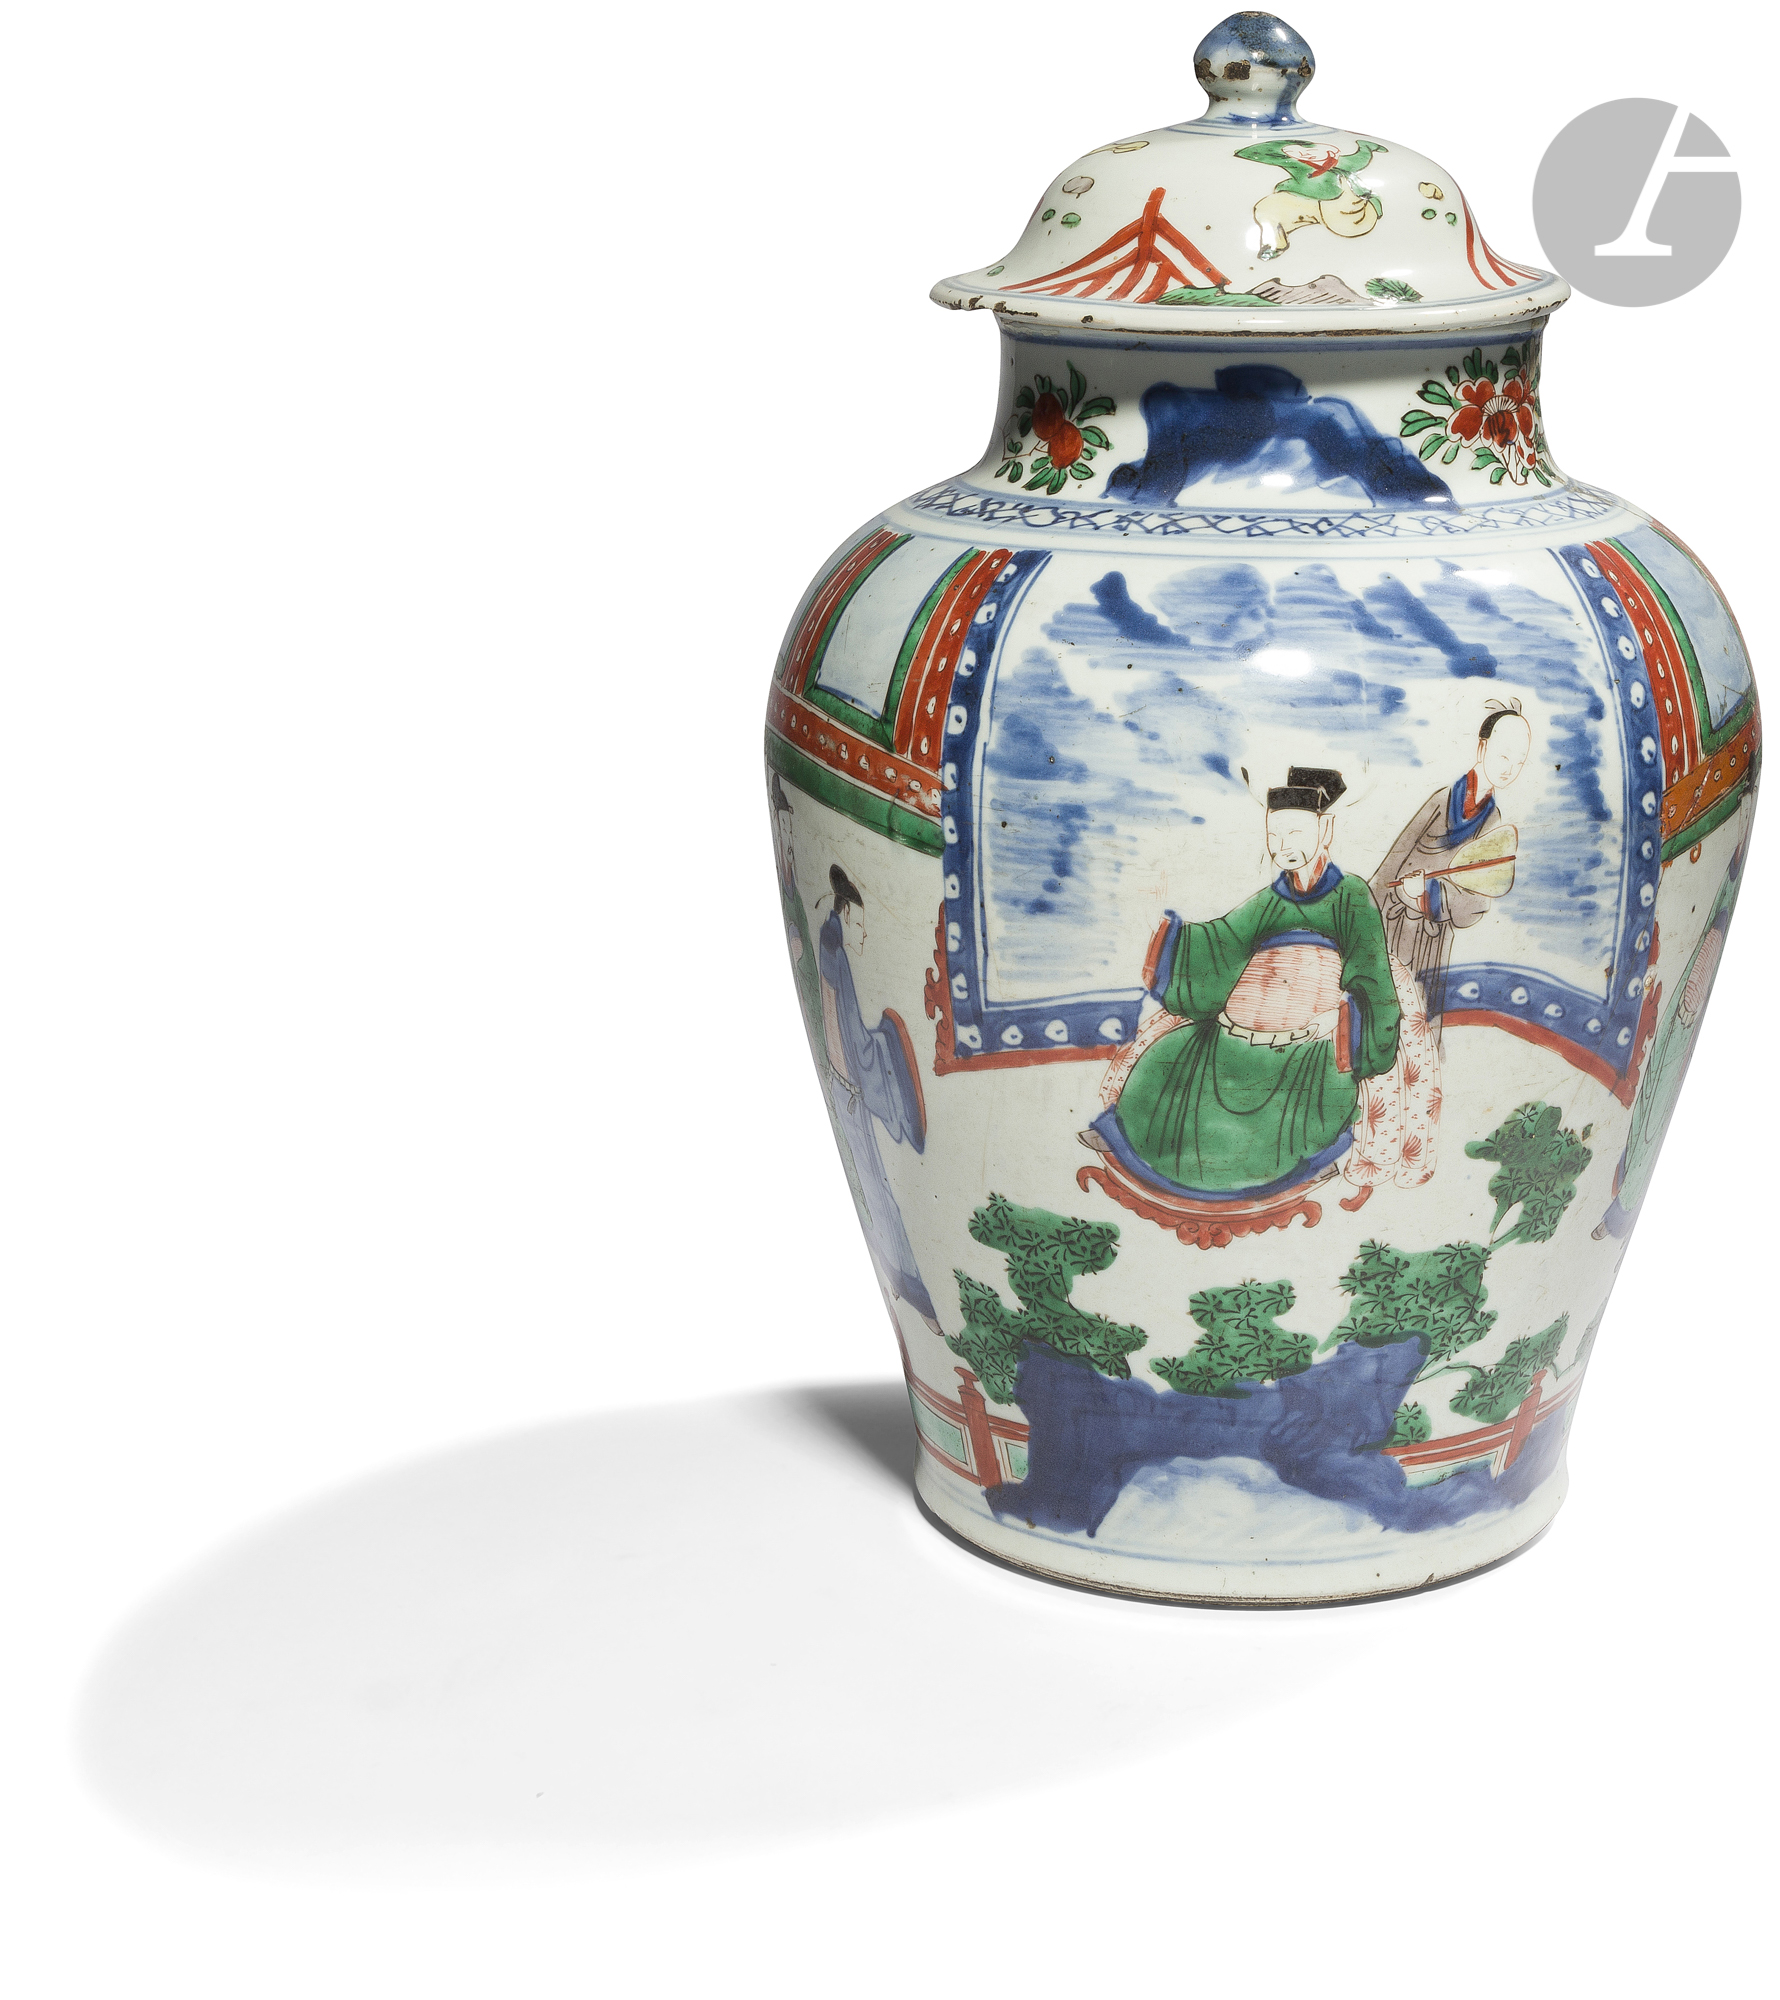 CHINE - XVIIe siècle Potiche couverte balustre en porcelaine à décor émaillé polychrome dit "